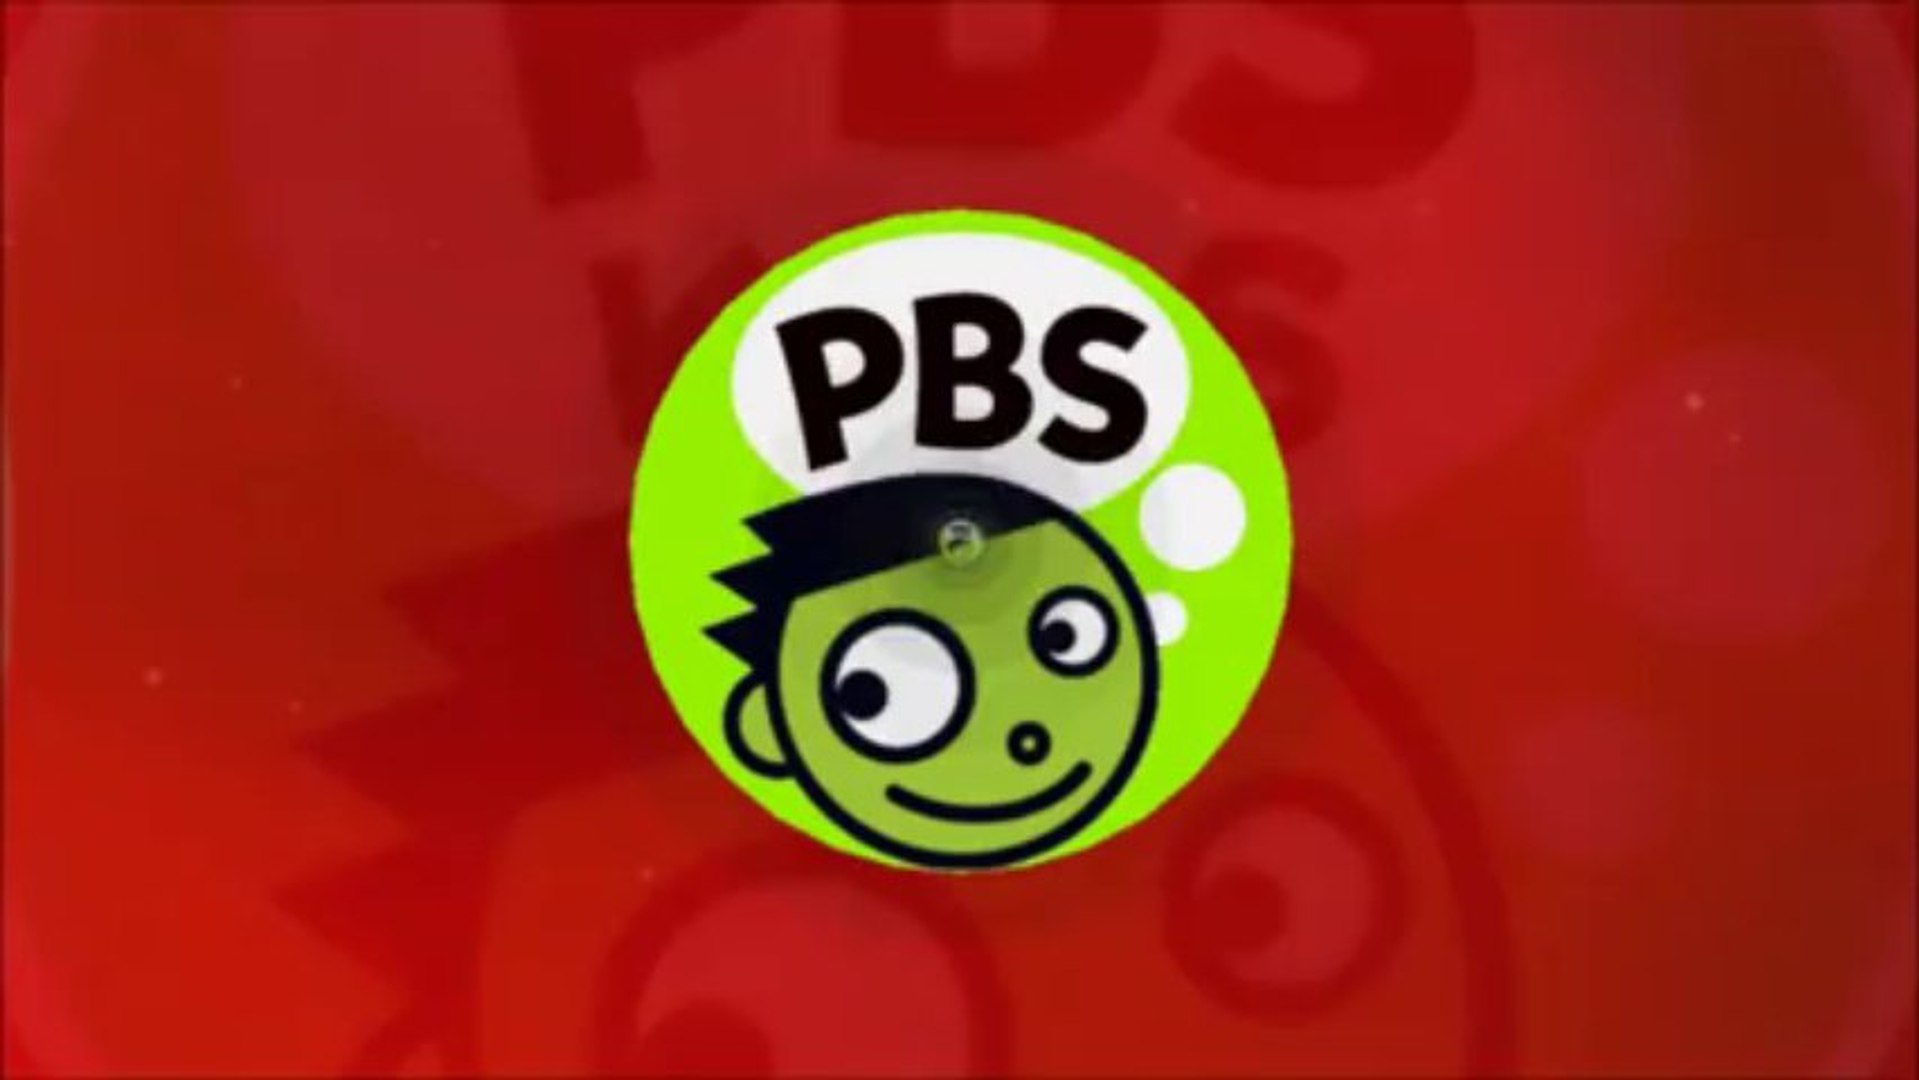 PBS Kids TV Network ID (2017)